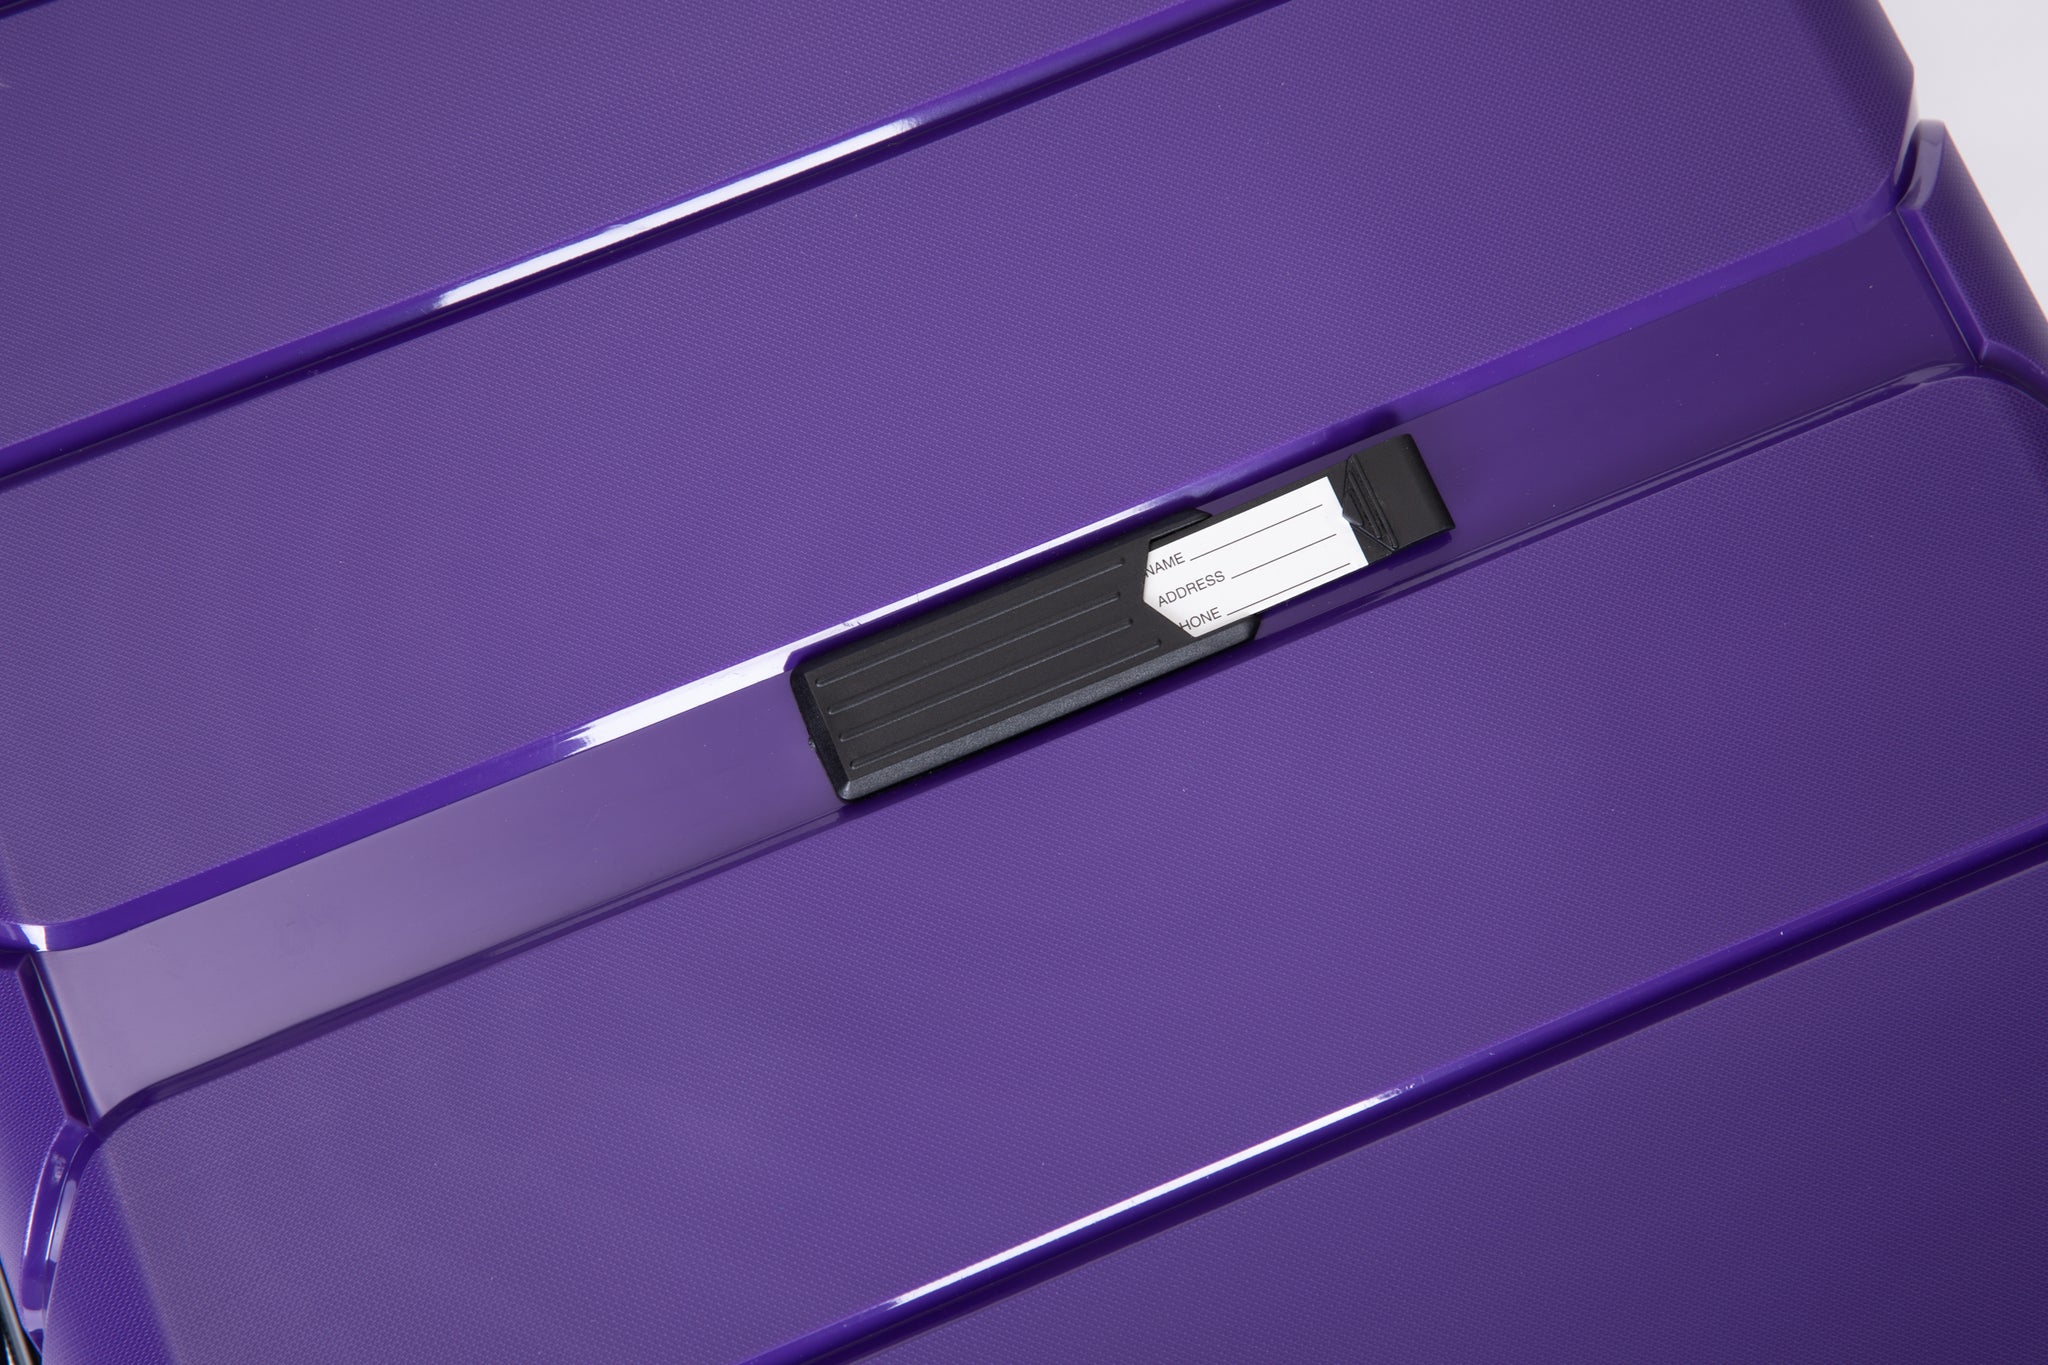 Hardshell Suitcase Spinner Wheels PP Luggage Sets purple-polypropylene